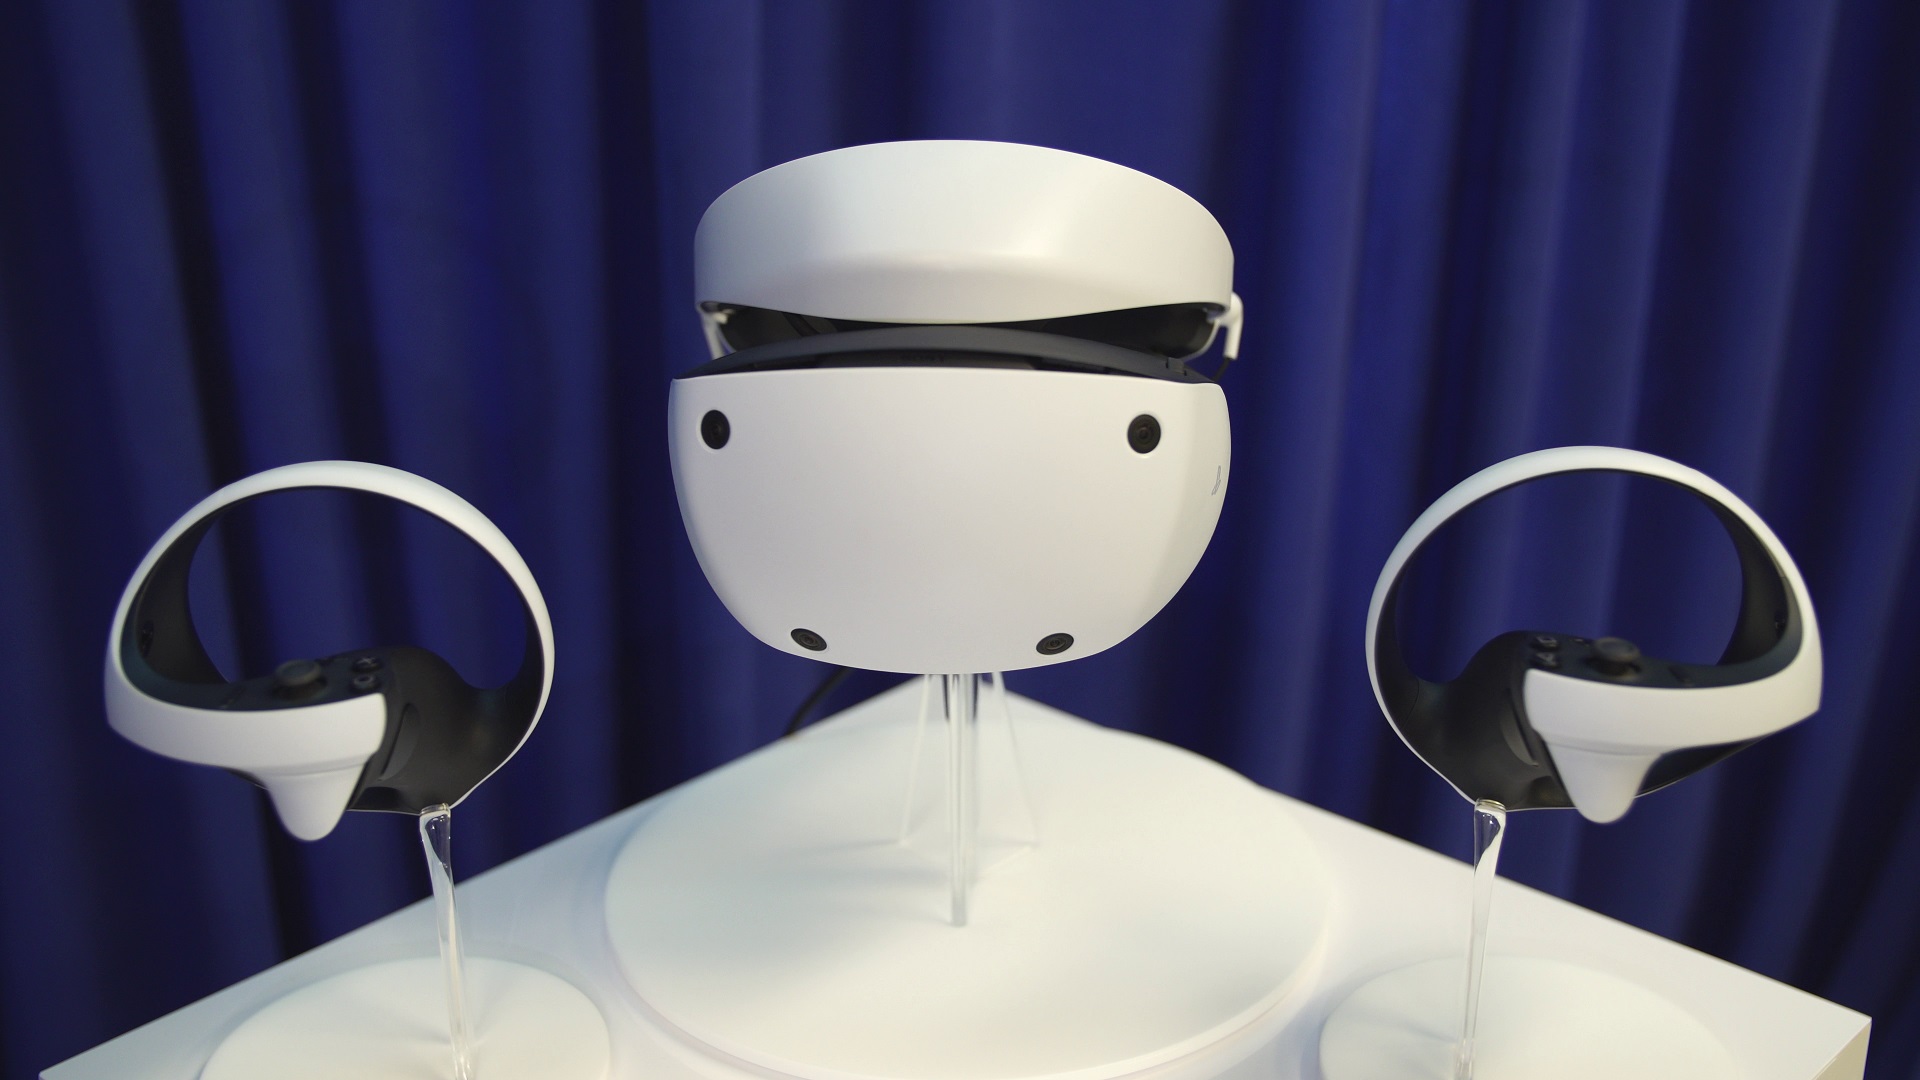 PlayStation VR 2 发售日期与价格公开